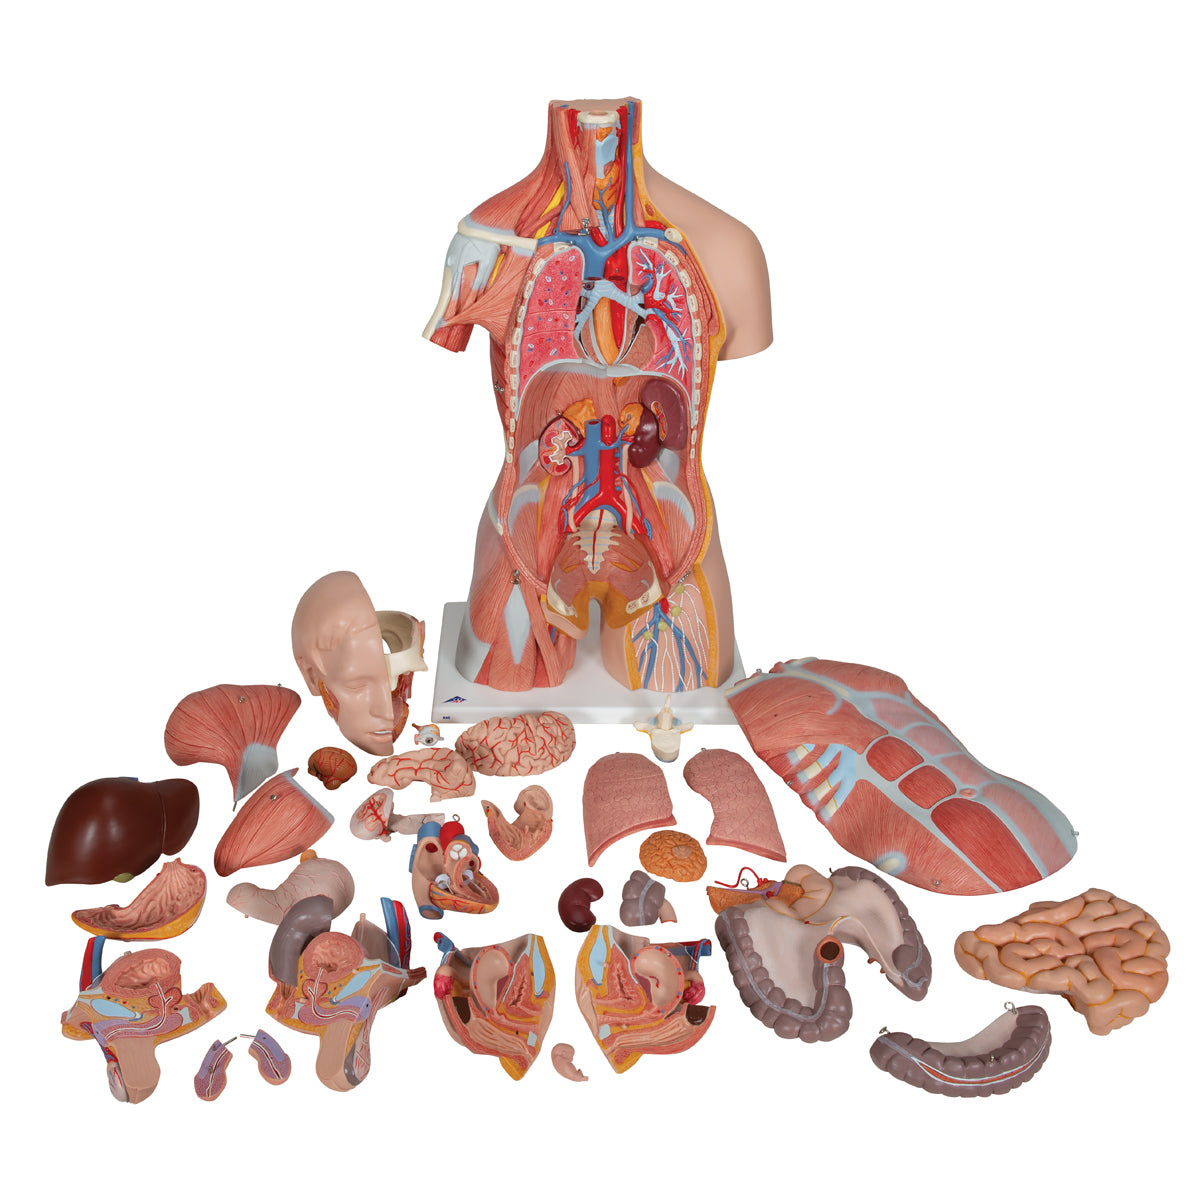 Komplet torso med 30 udtagelige dele, åben ryg, muskler, et foster og udskiftelige kønsorganer